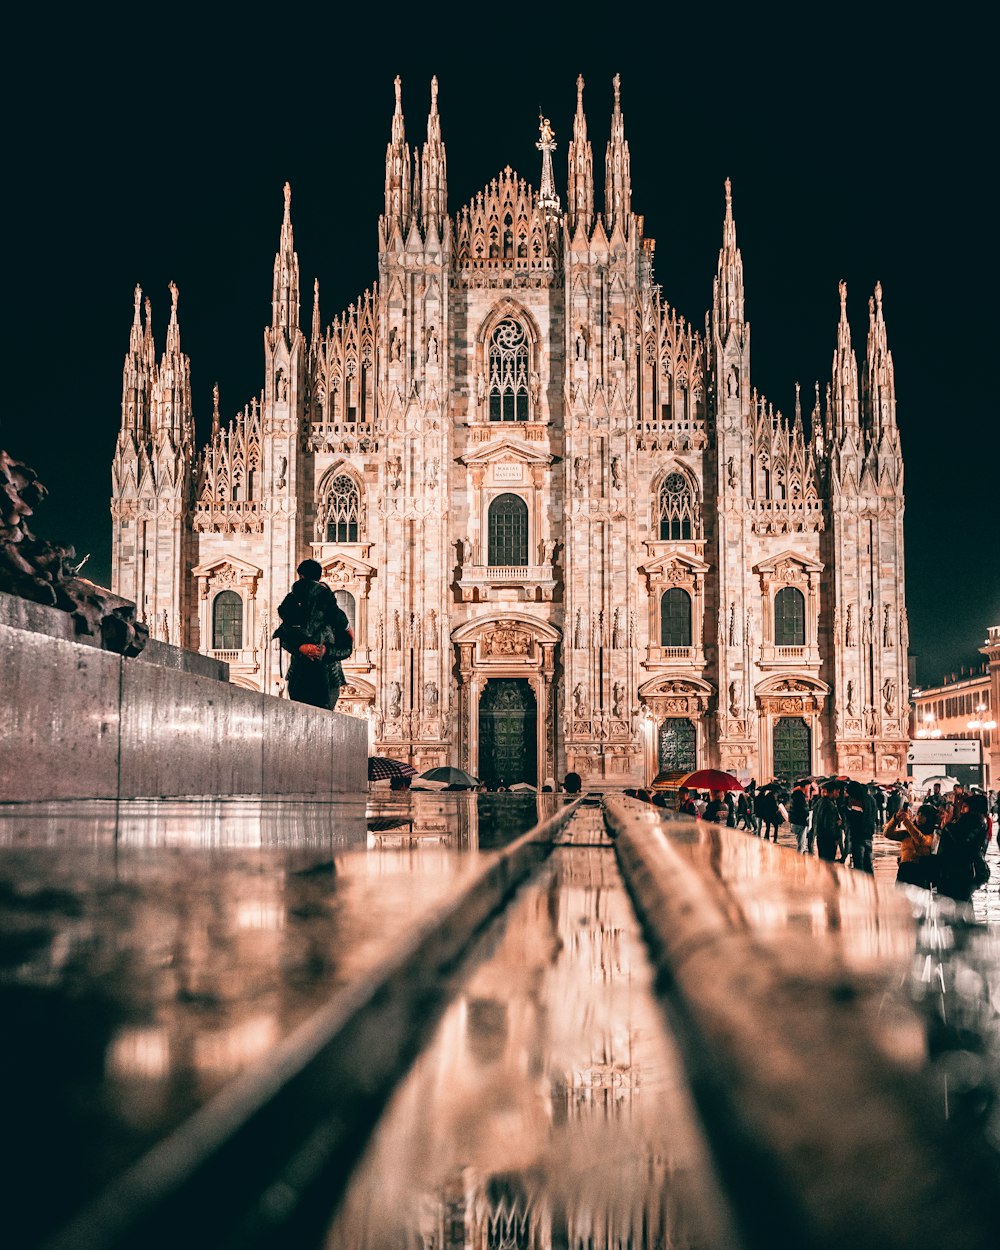 Milan Cathedral, Italy at night